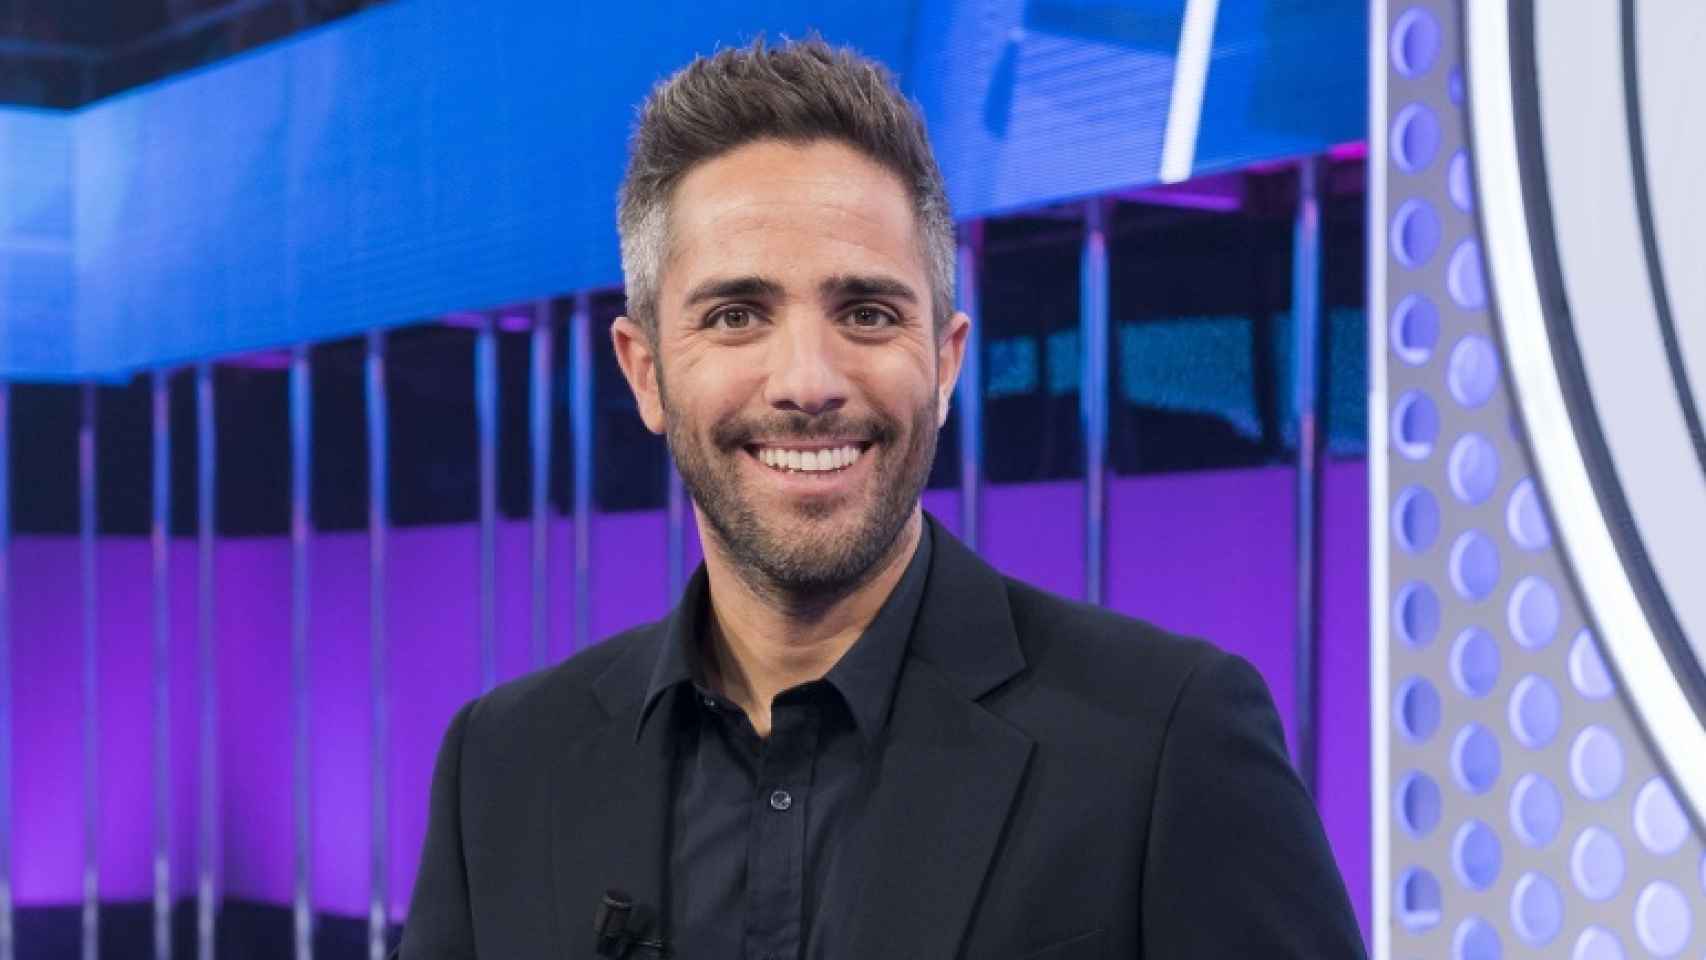 El presentador, vinculado a TVE con dos programas,  estrena nuevo espacio en Canal Sur.